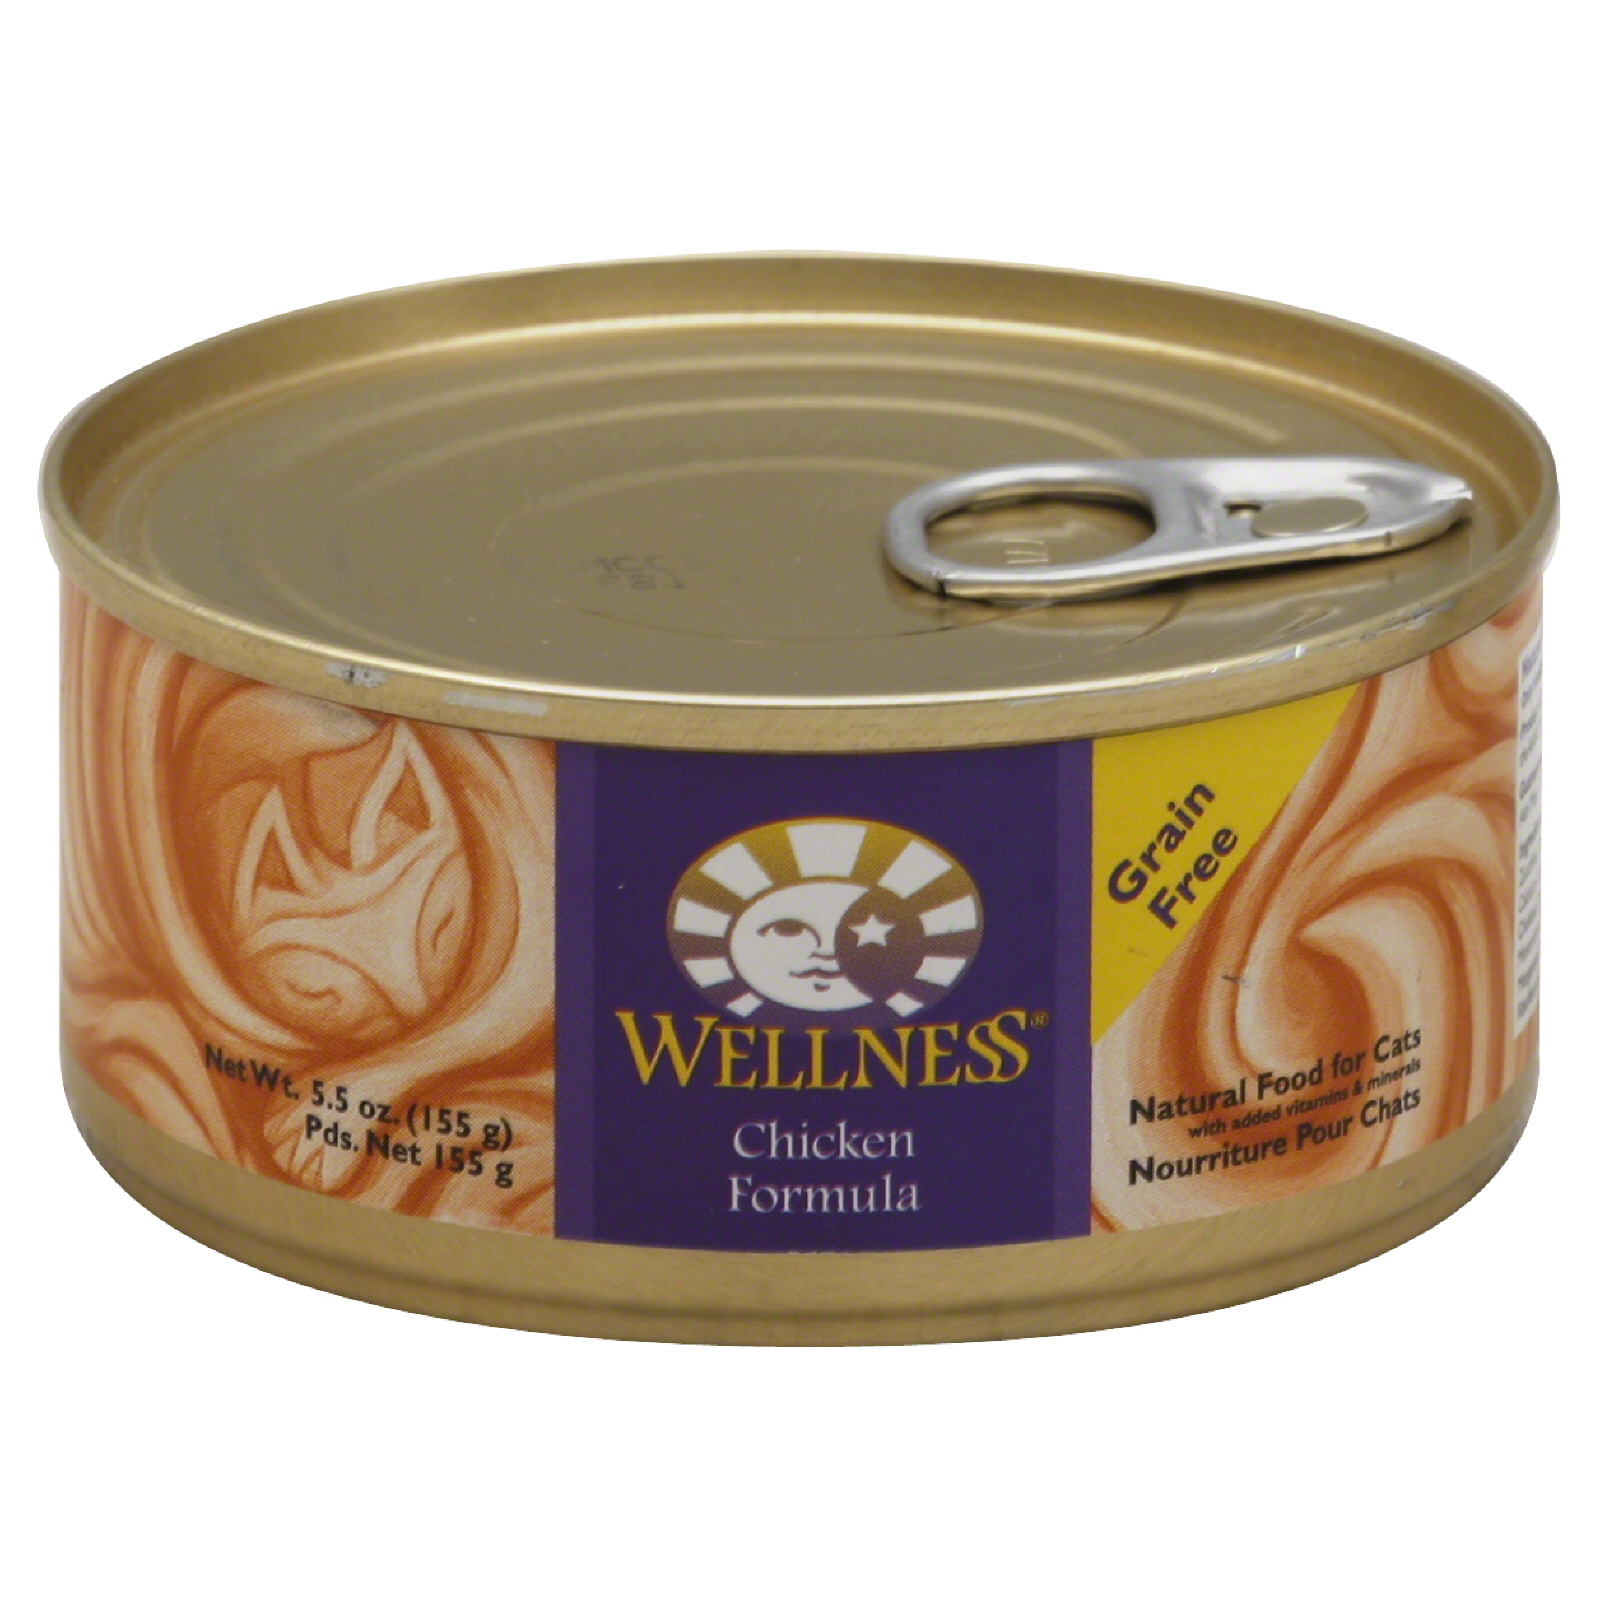 Wellness Cat Food, Chicken Formula, 5.5 oz (155 g)